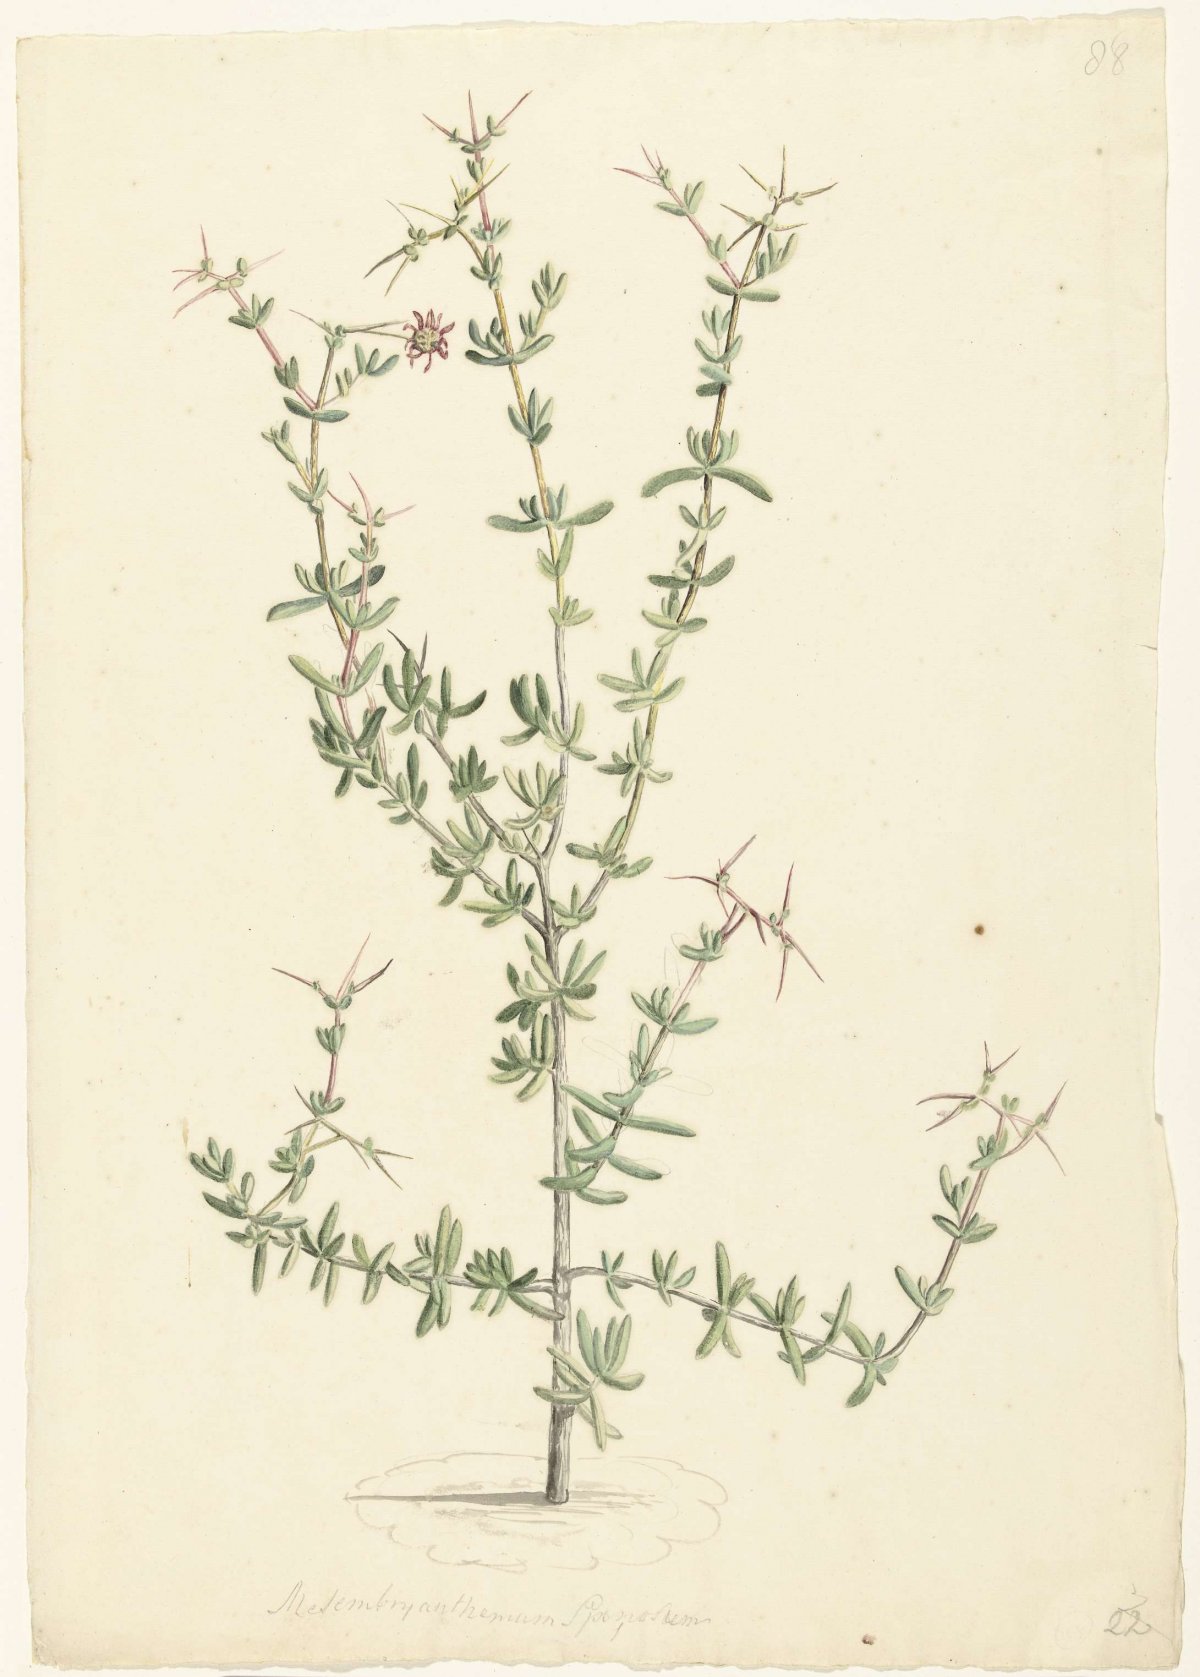 Mesembryanthemum spinosum, Laurens Vincentsz. van der Vinne, 1668 - 1729